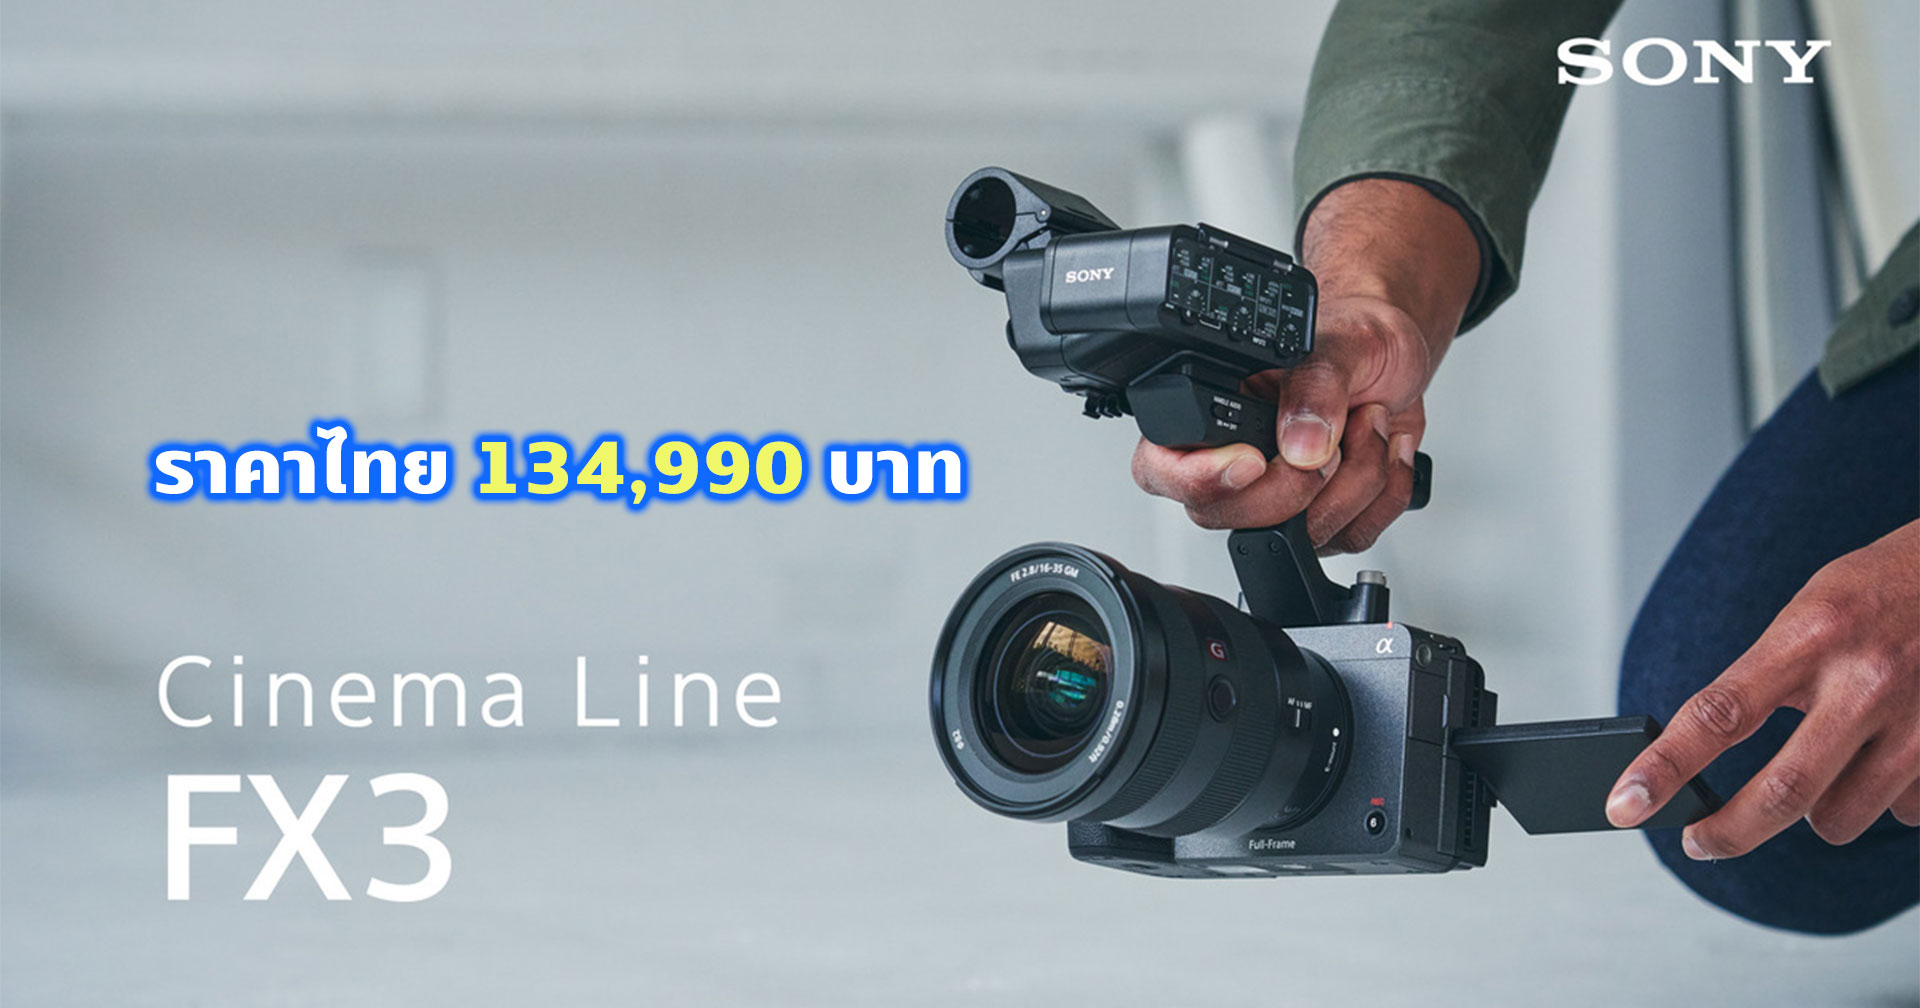 เปิดราคาไทย Sony FX3 กล้อง Cinema Line ตัวเล็กน้ำหนักเบา สำหรับงานภาพยนตร์ 134,990 บาท